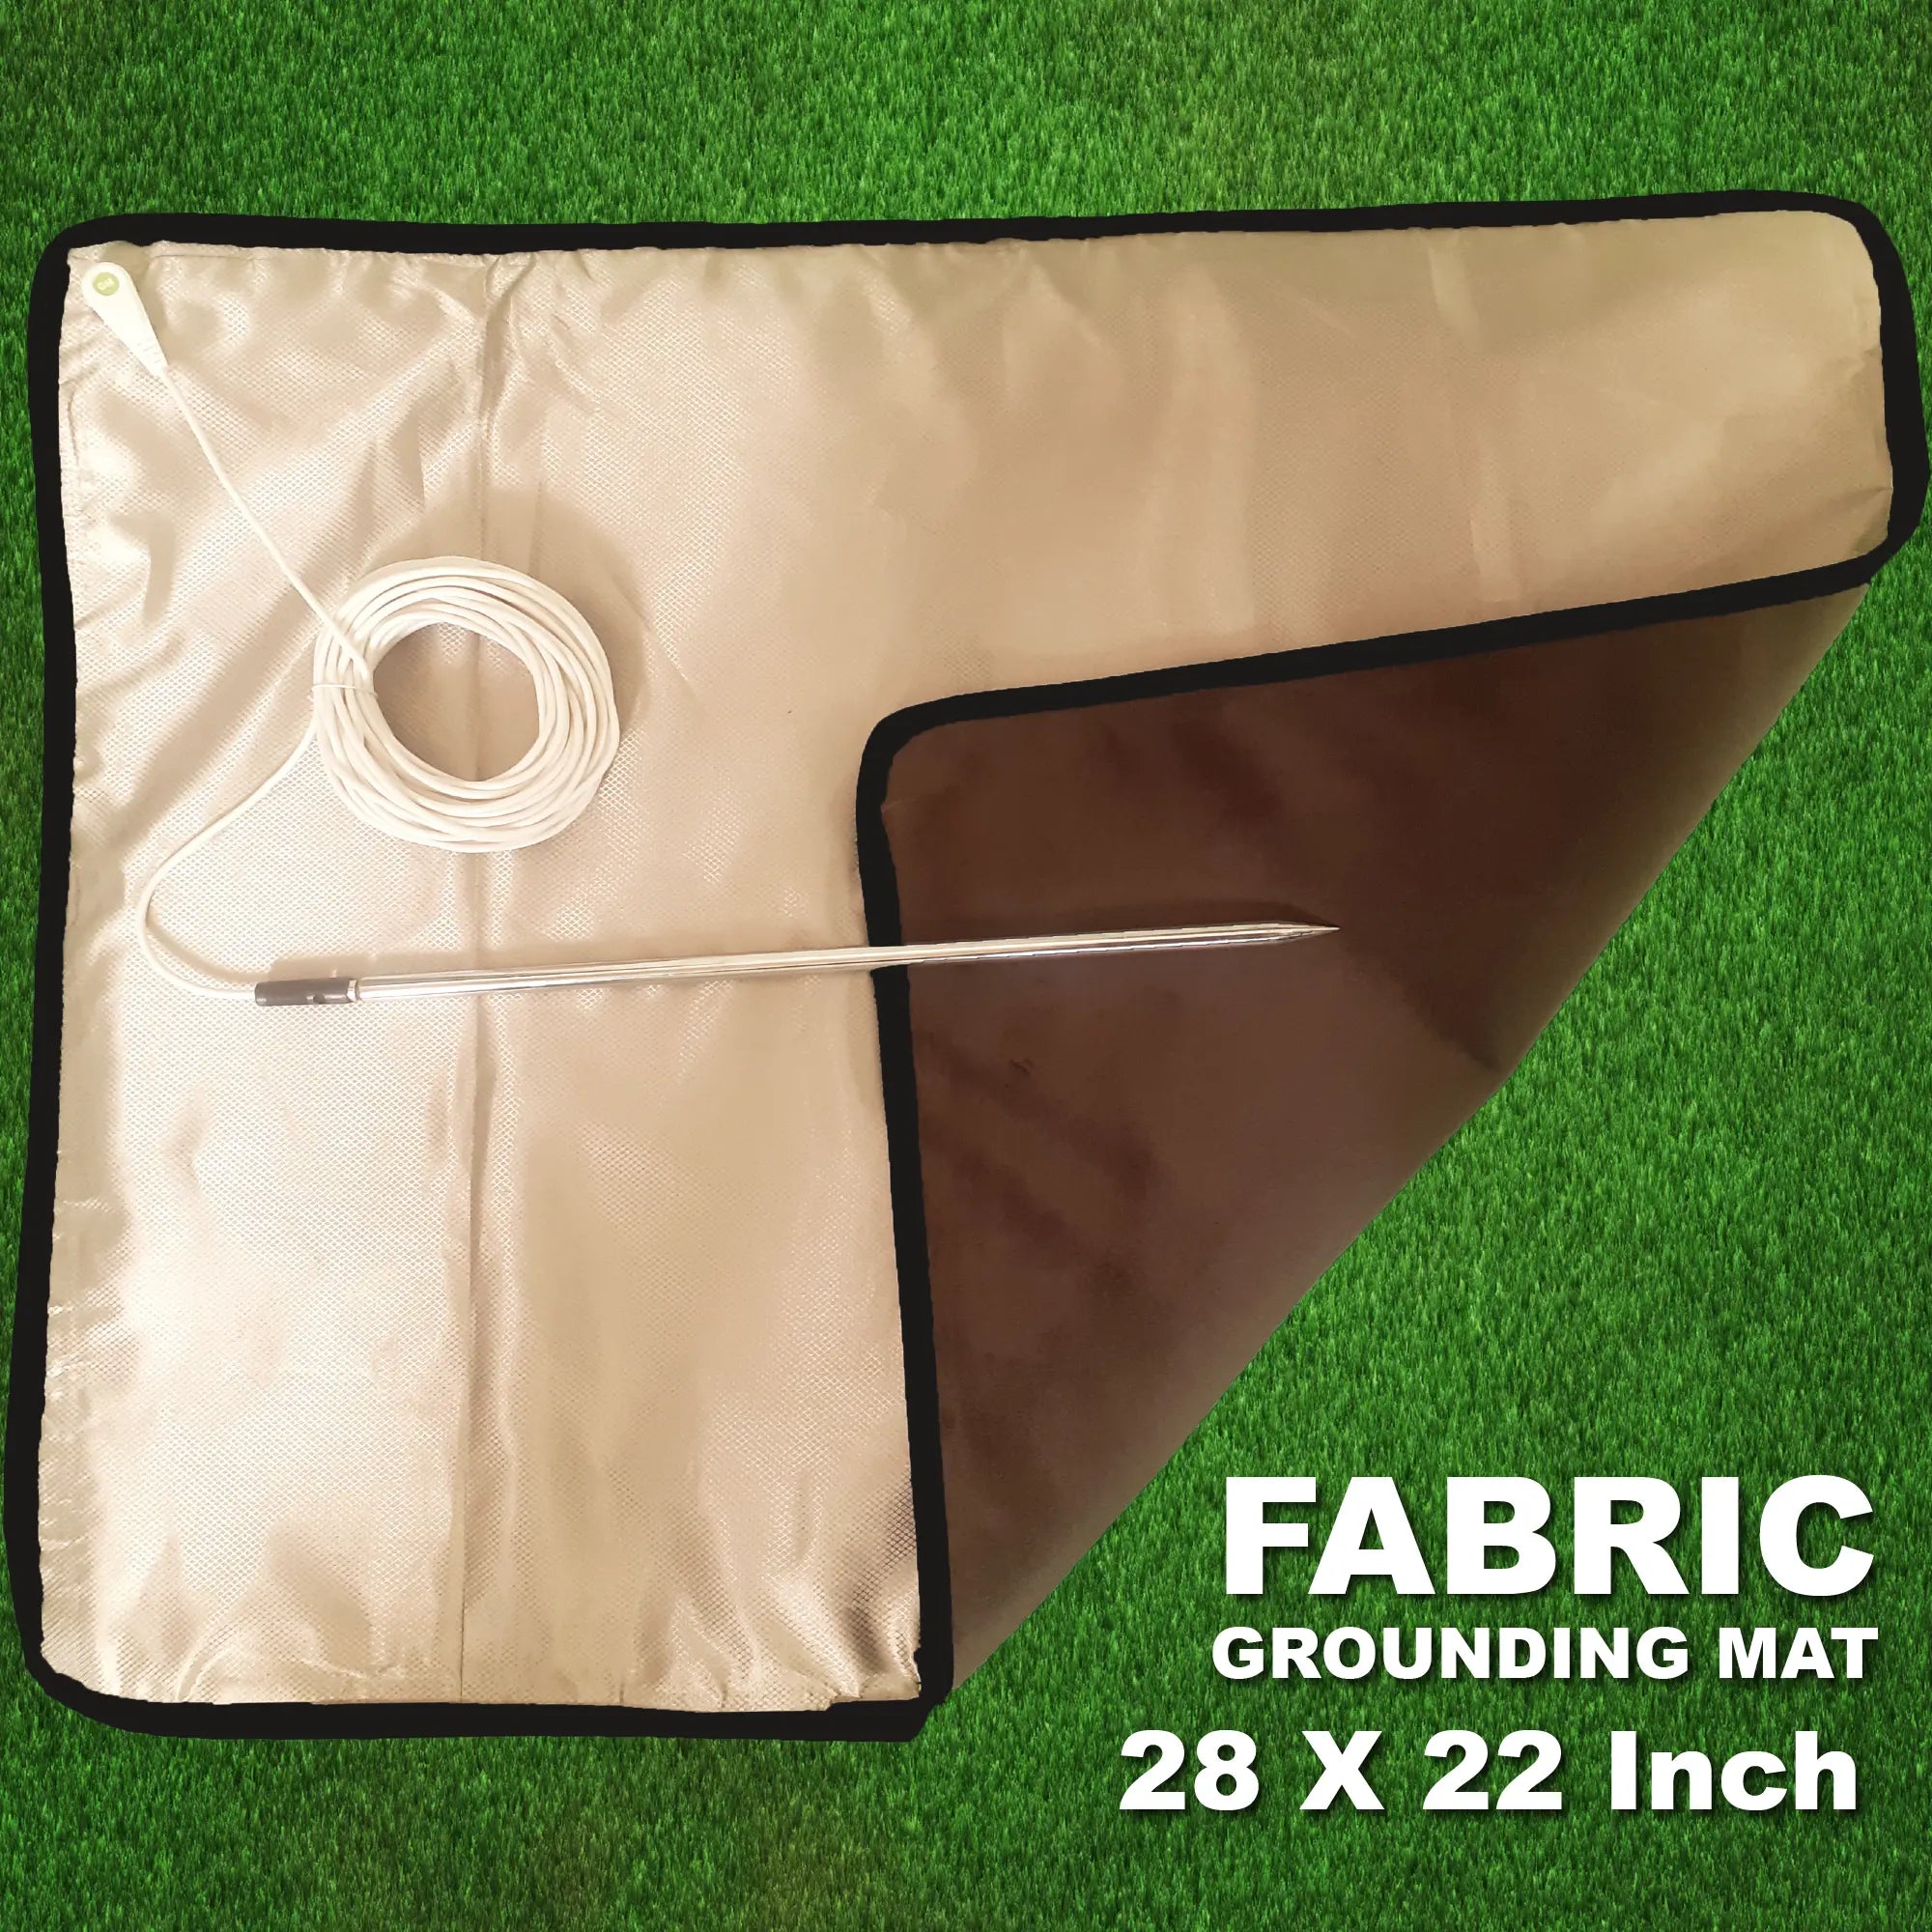 Fabric Grounding Mat 